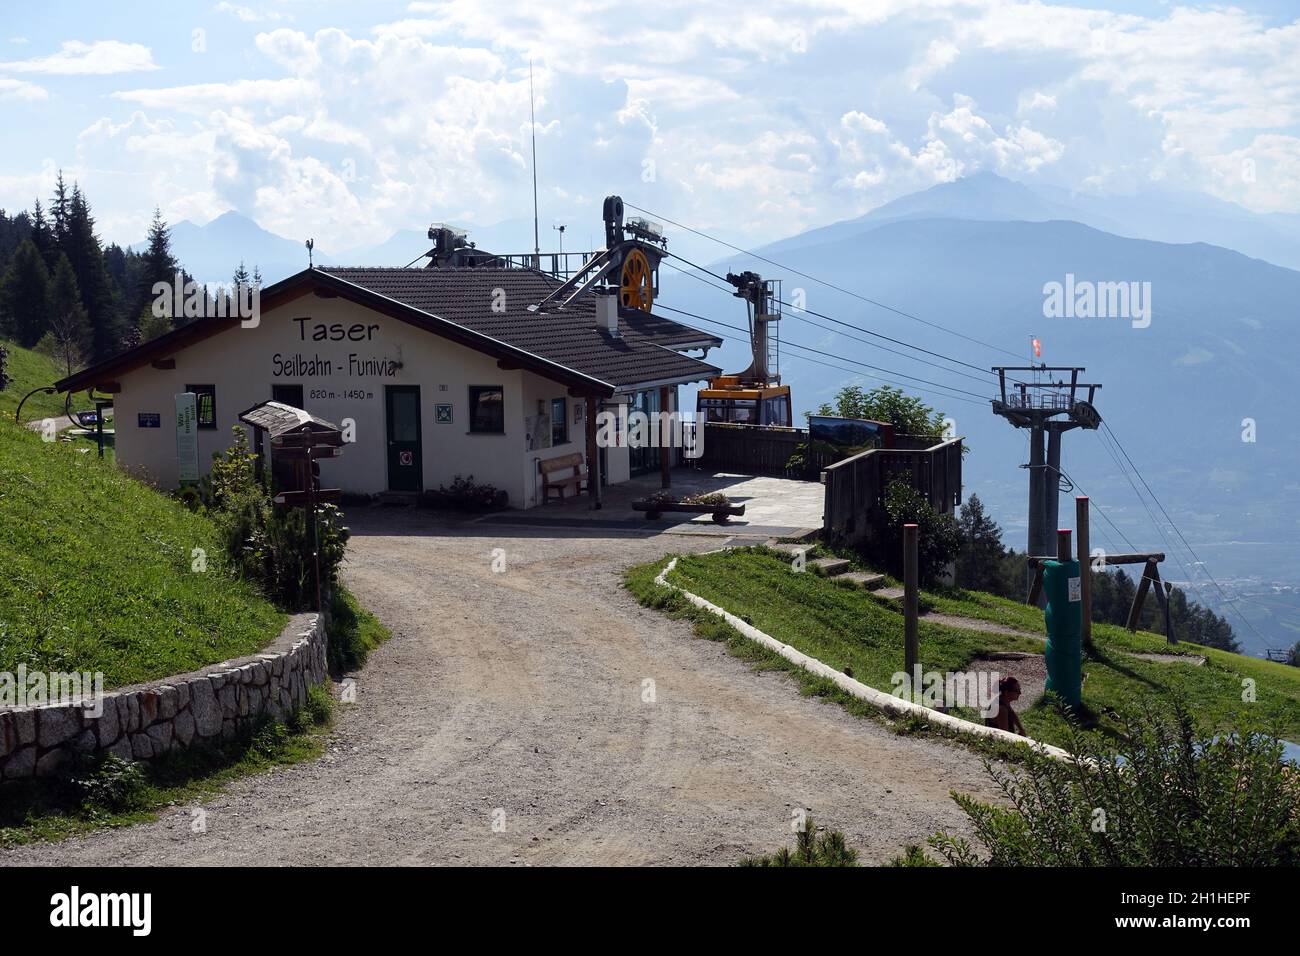 Bergstation der Taser-Seilbahn, Schenna, Südtirol, Italie Banque D'Images